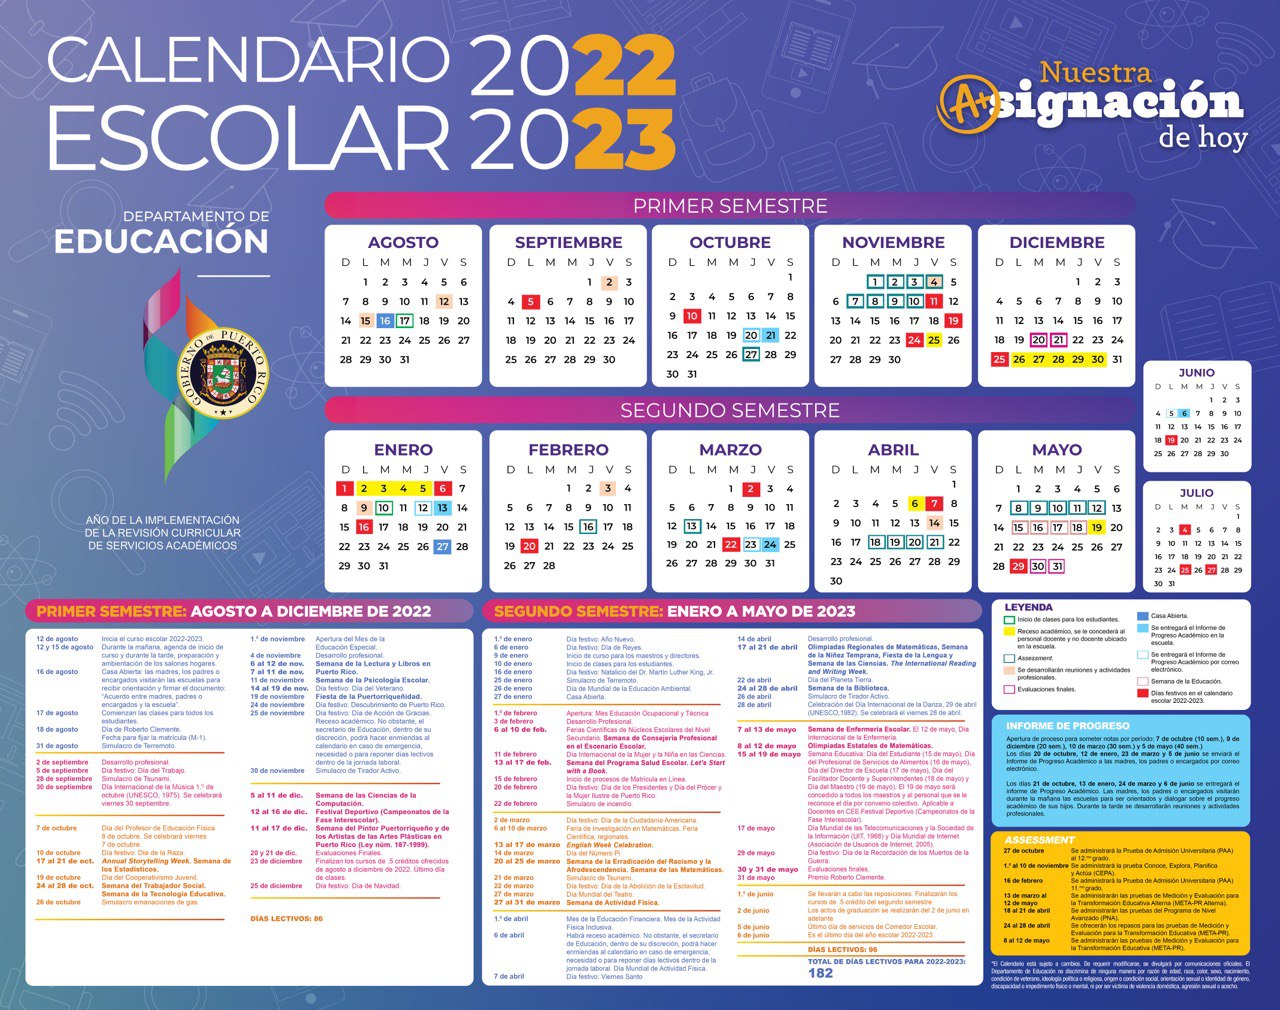 calendario-escolar-2023-puerto-rico-get-calendar-2023-updated-imagesee